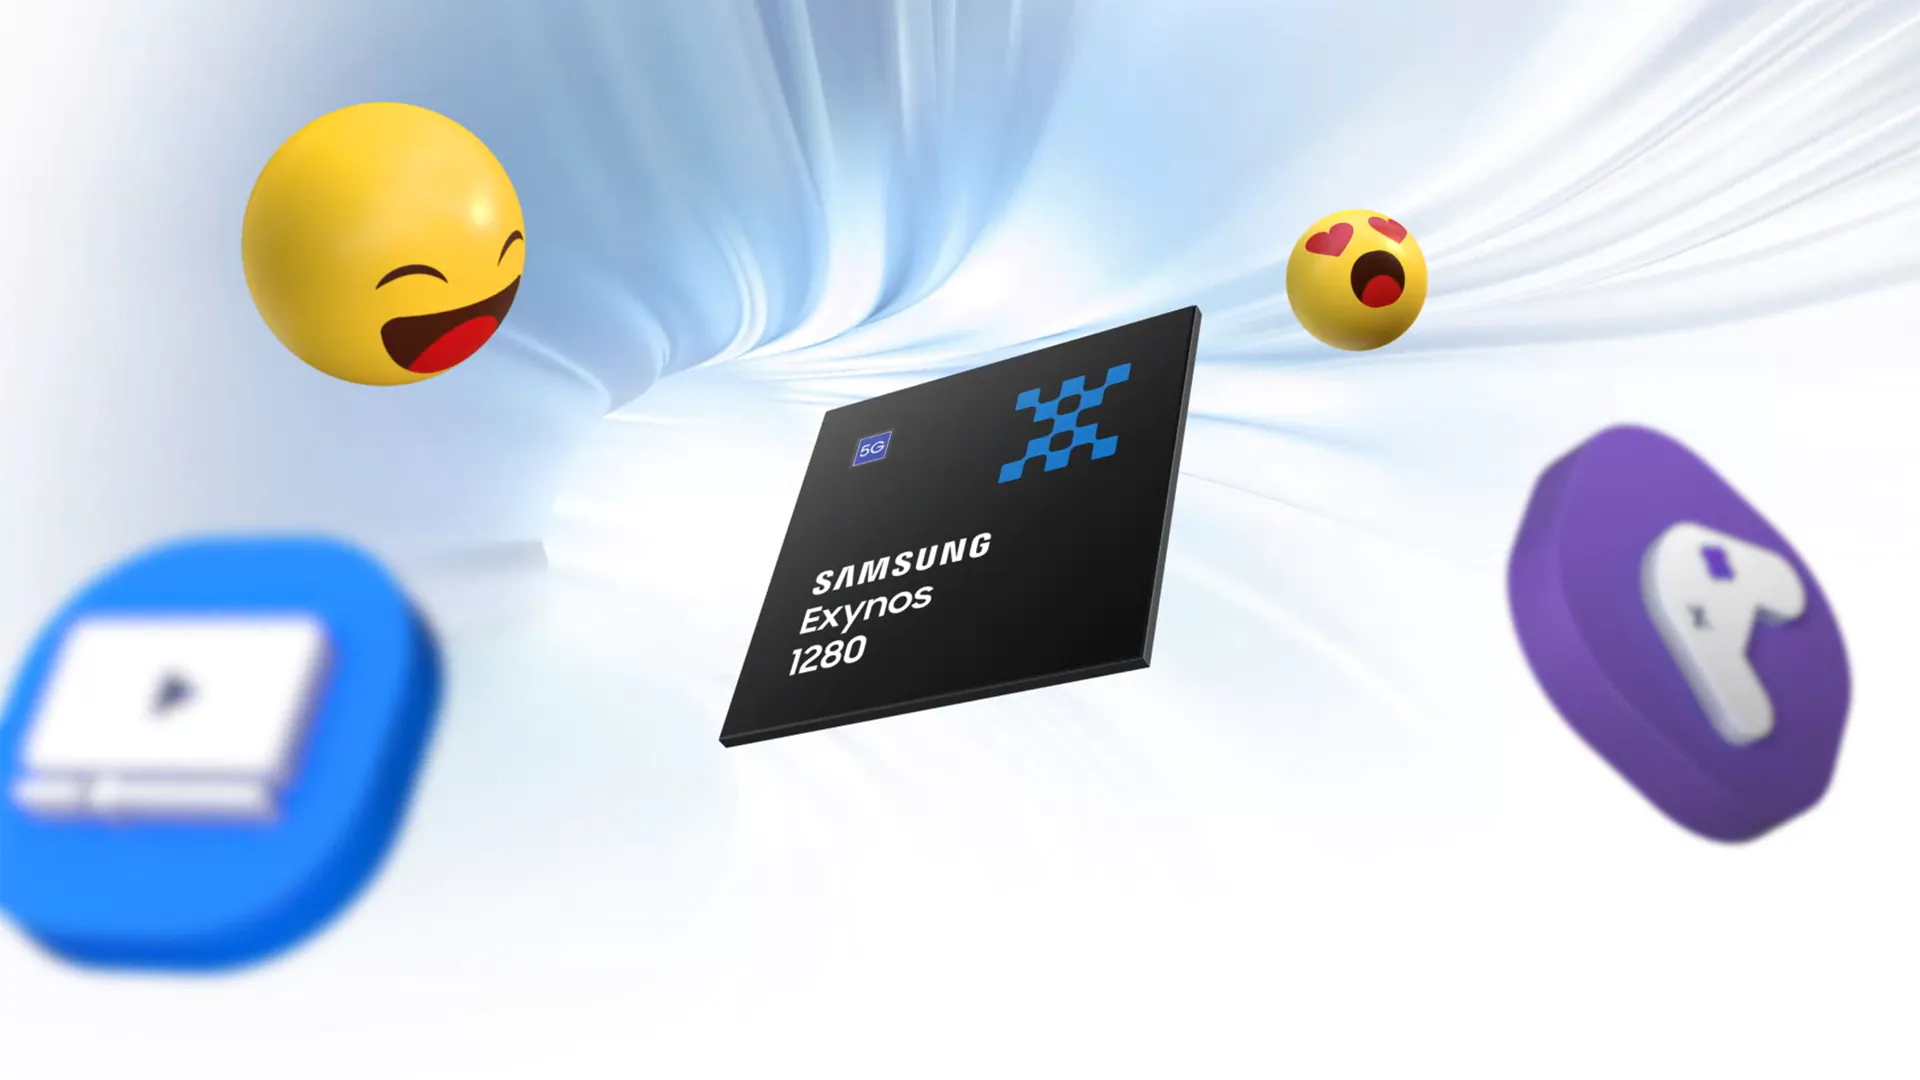 سامسونج تكشف رسميًا عن معالجها الجديد Samsung Exynos 1280